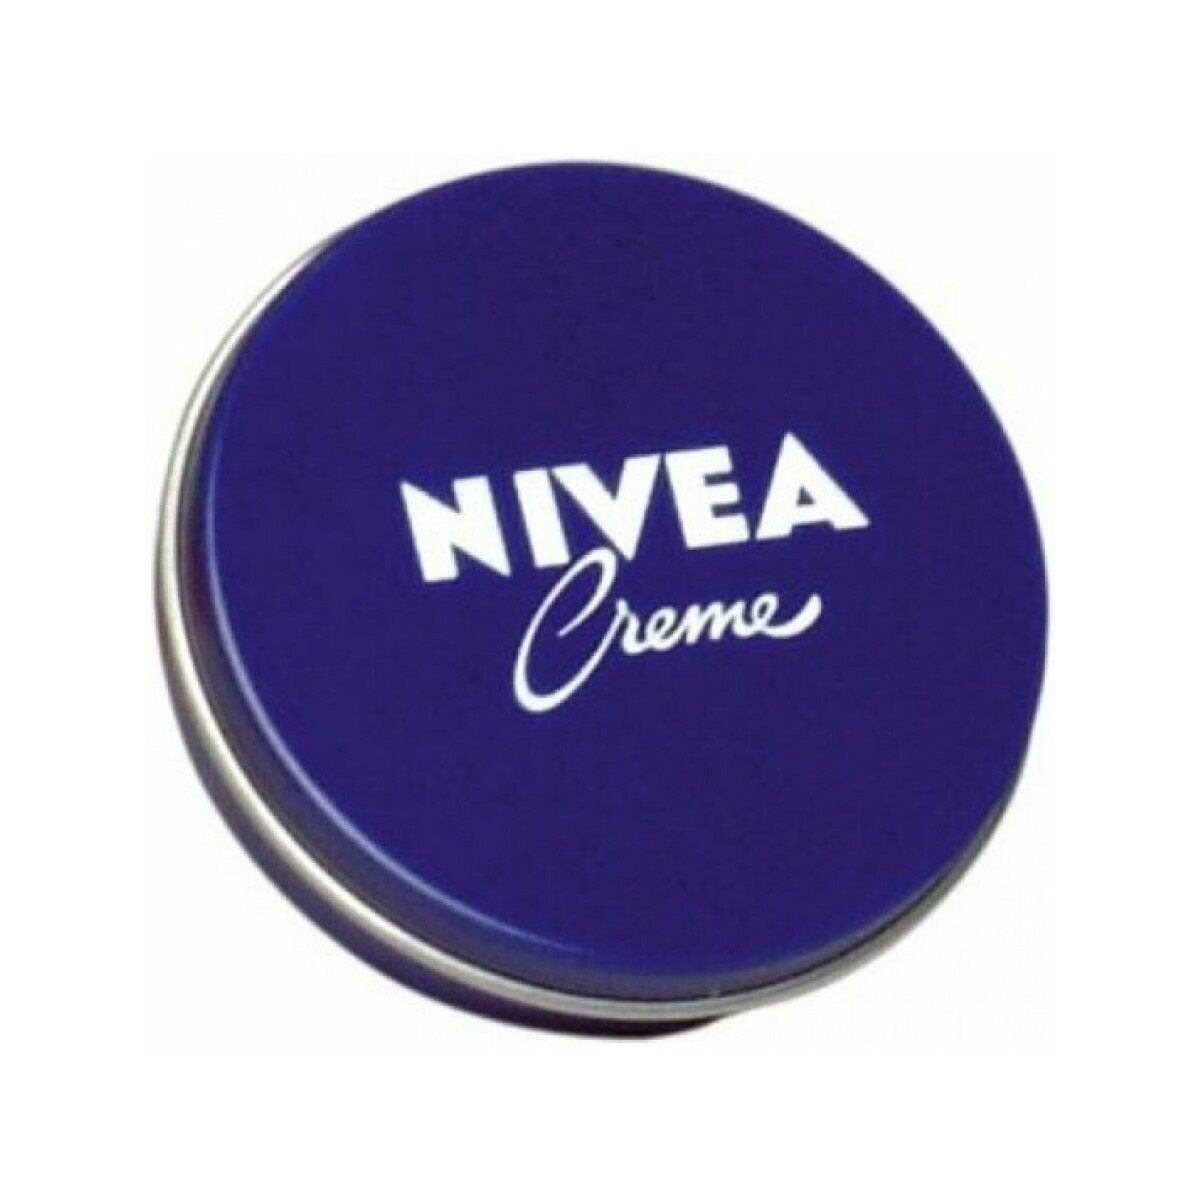 Beauty Anti-Aging & Anti-Falten Produkte Nivea Creme Dose 30ml Multicolor